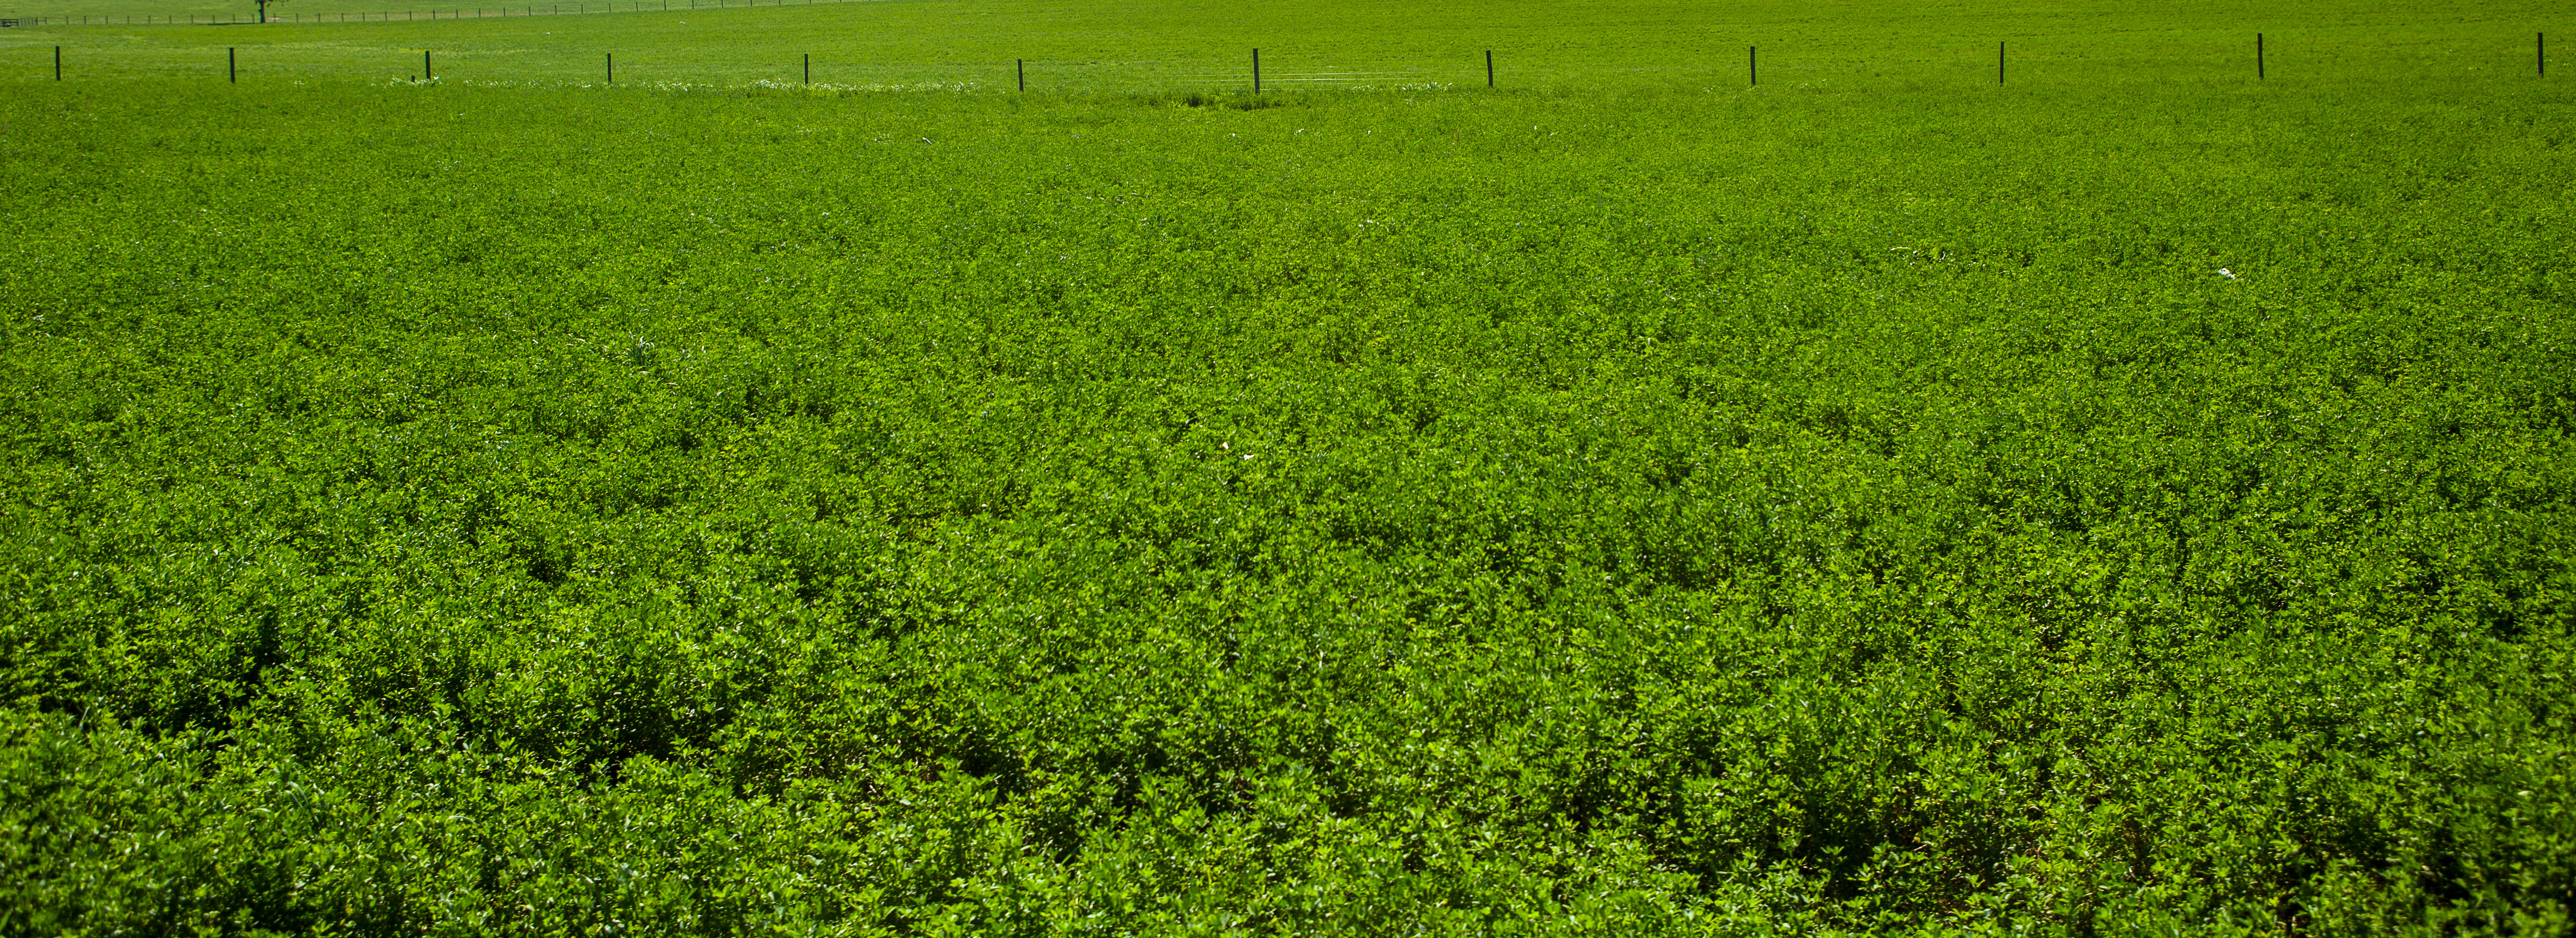 Alfalfa Field